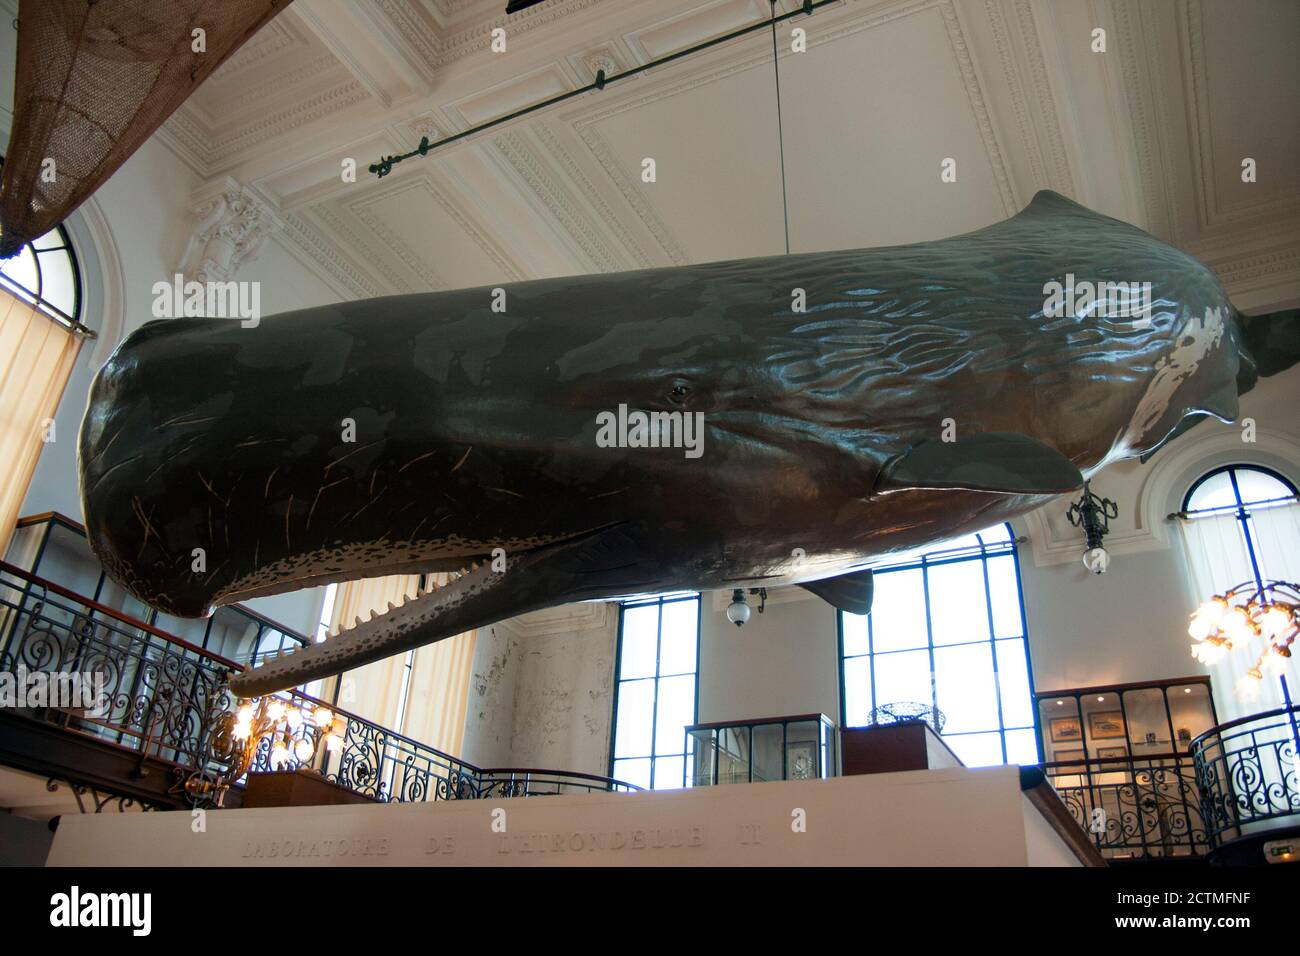 Museo Oceanografico di Monaco balena volante. Un mockup di una balena di sperma. Physeter macrocephalus o cachalot è la più grande delle balene dentate. Foto Stock